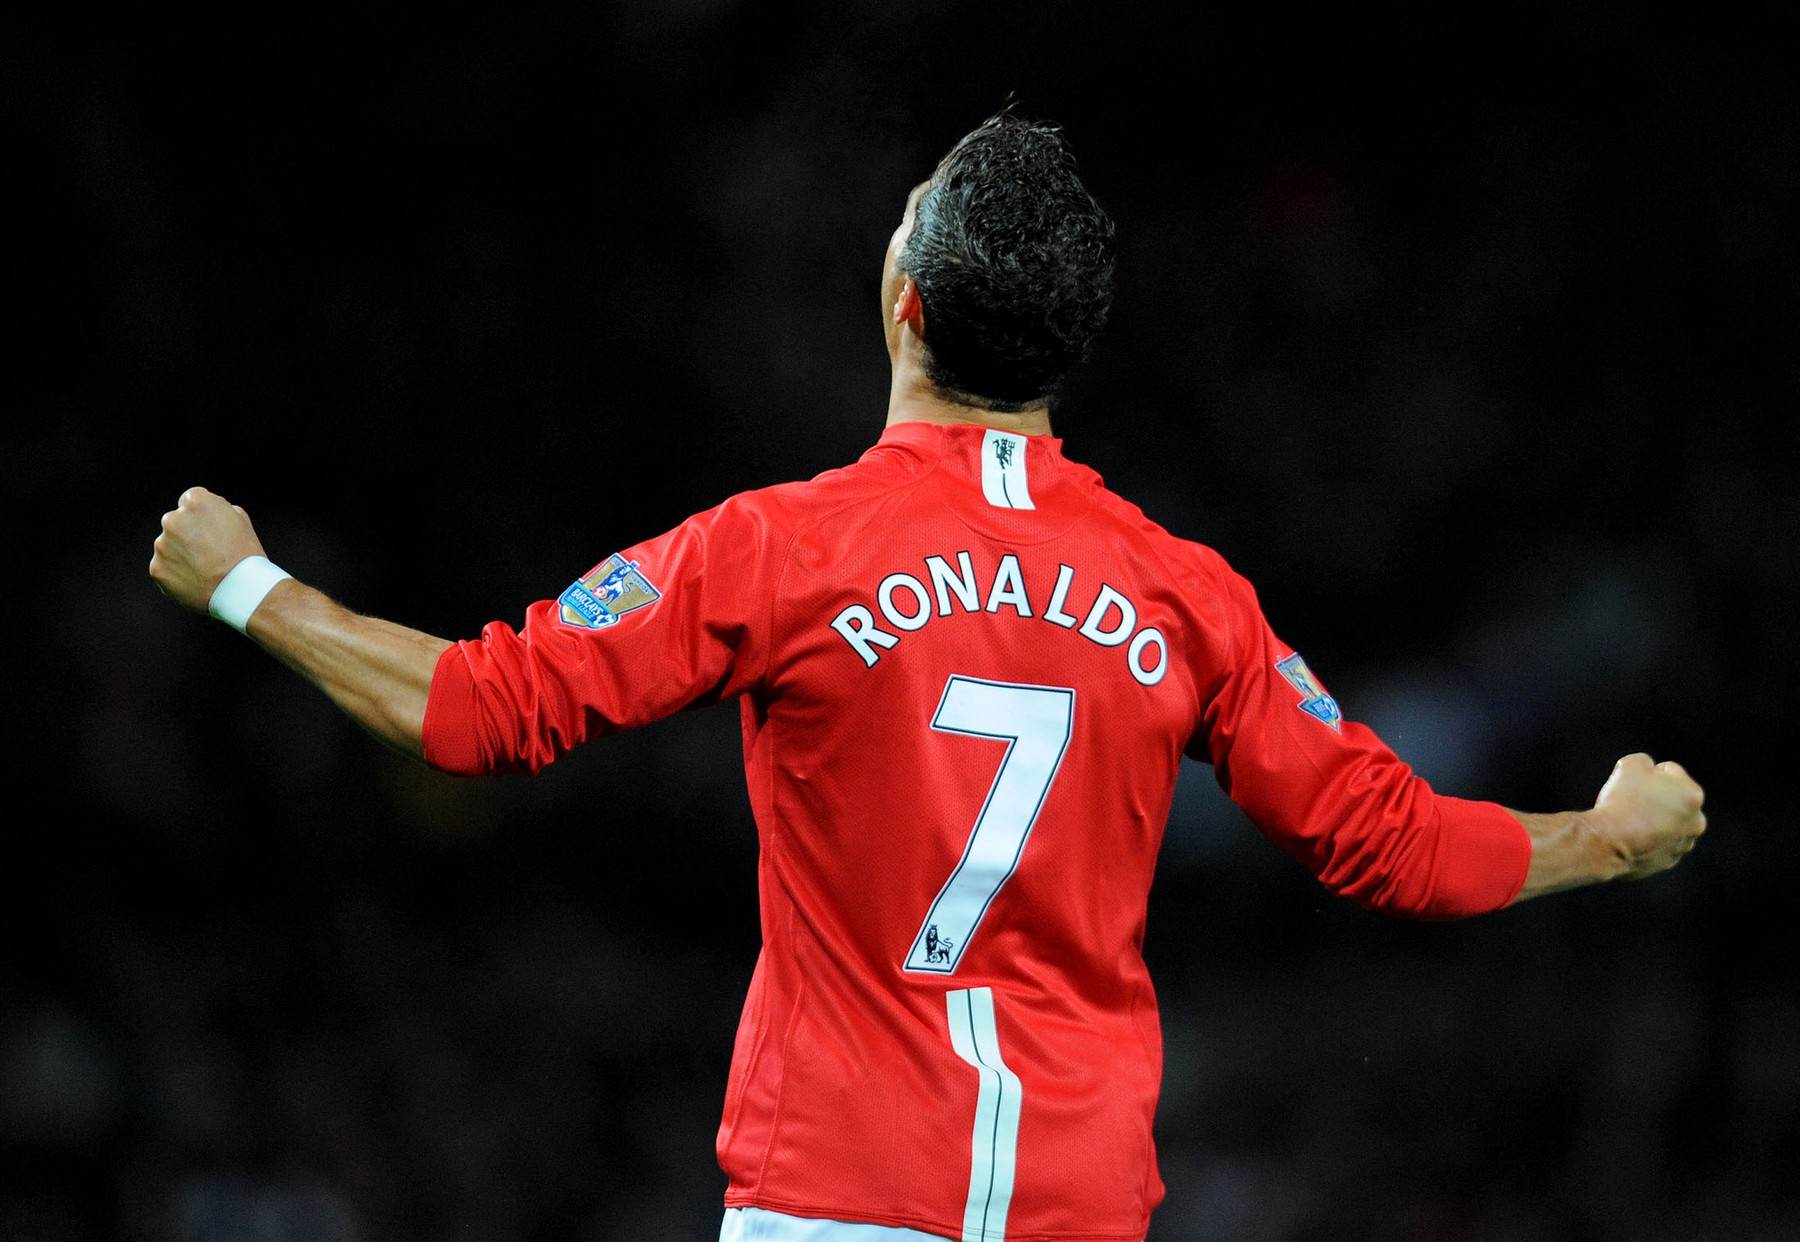  Kristijano Ronaldo će nositi broj 7 u Mančester junajtedu 